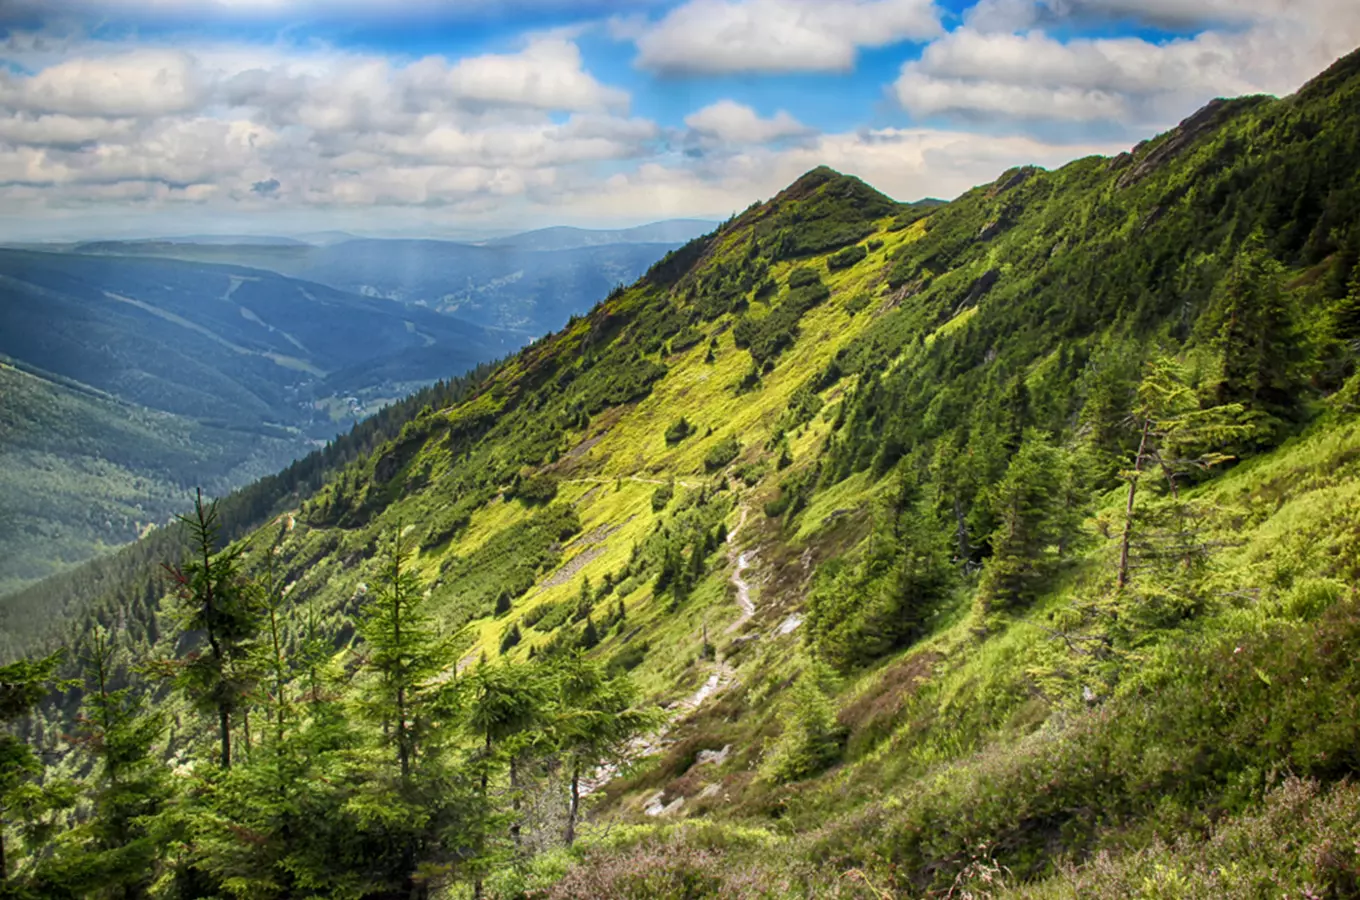 Skvosty našich národních parků: 50 nejkrásnějších míst, která navštívit v Krkonoších